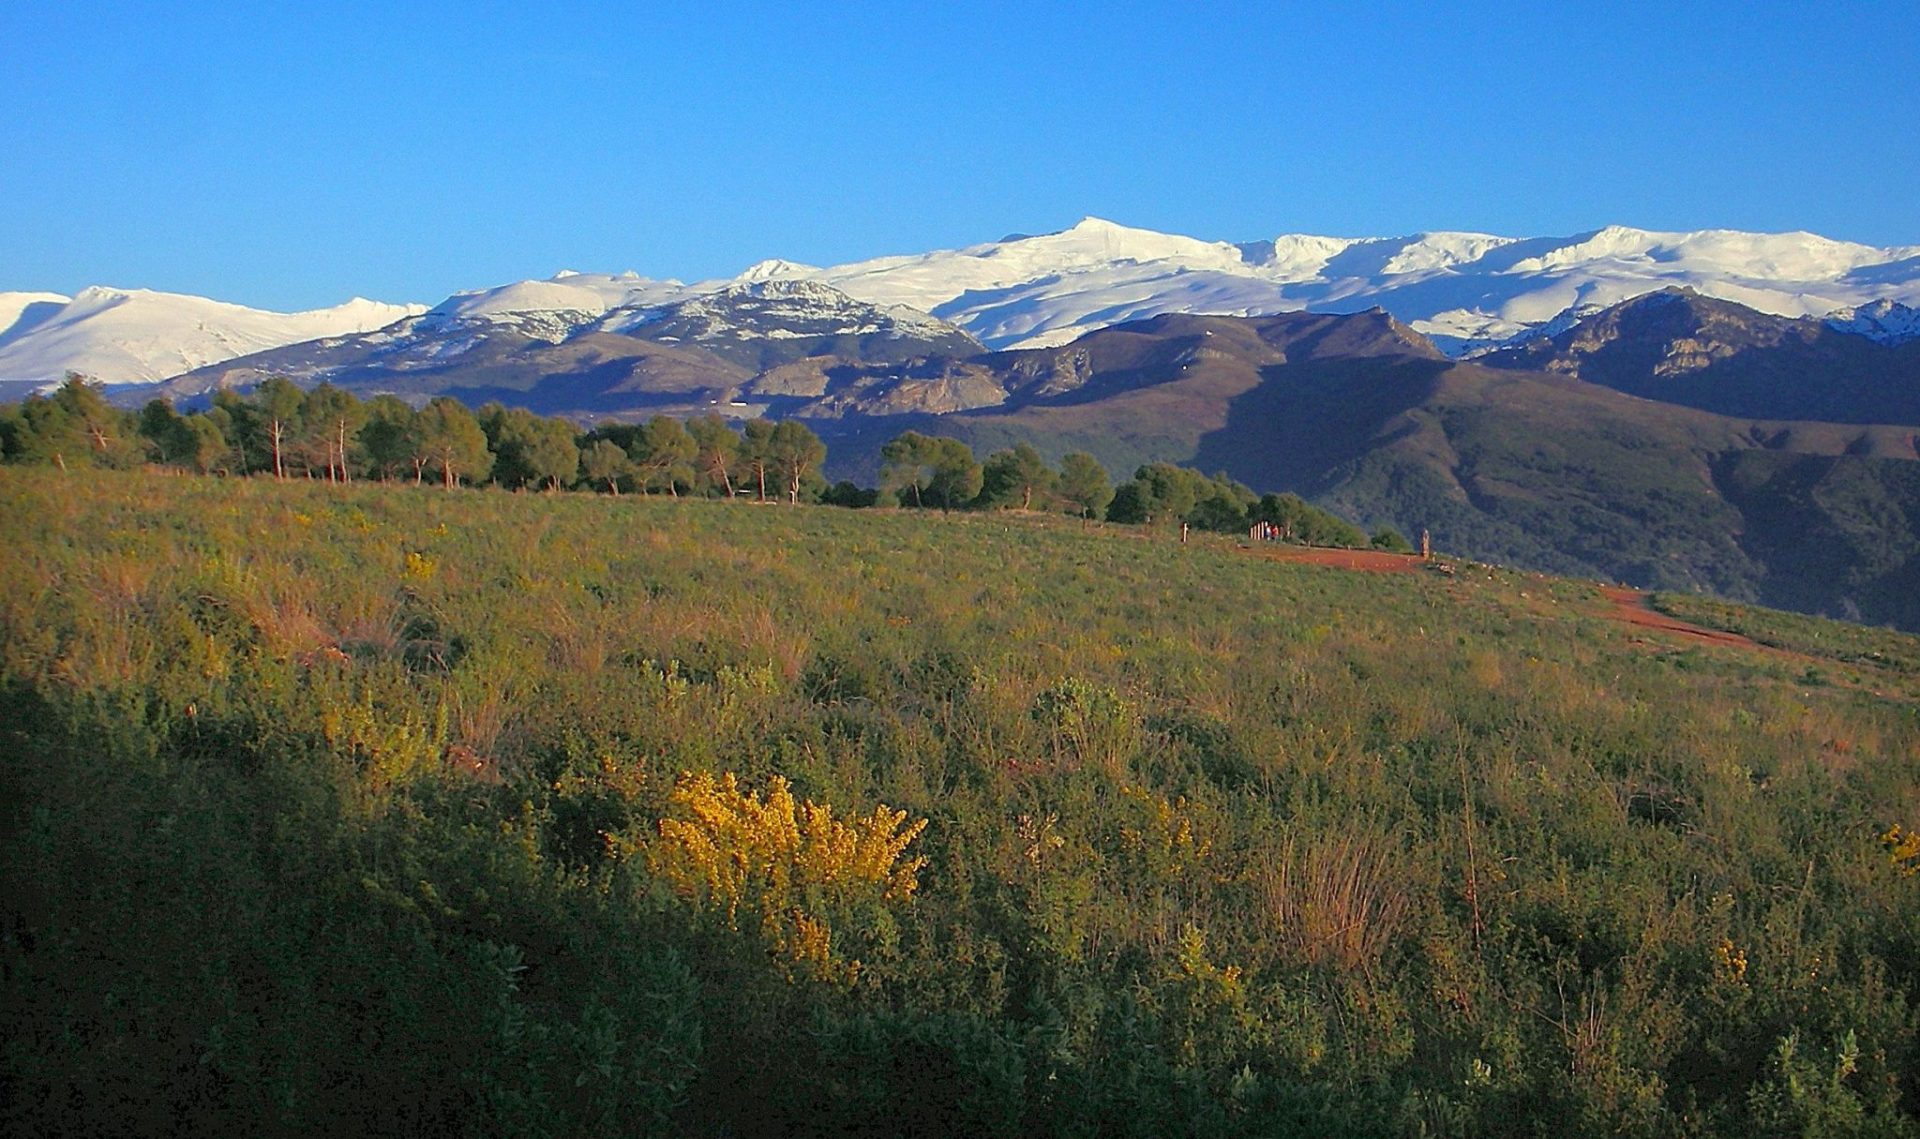 Vista panorámica de Sierra Nevada, uno de los ecosistemas más valiosos de España que está protegido por sendas declaraciones de parque nacional y natural. EFE/Alfredo Martínez